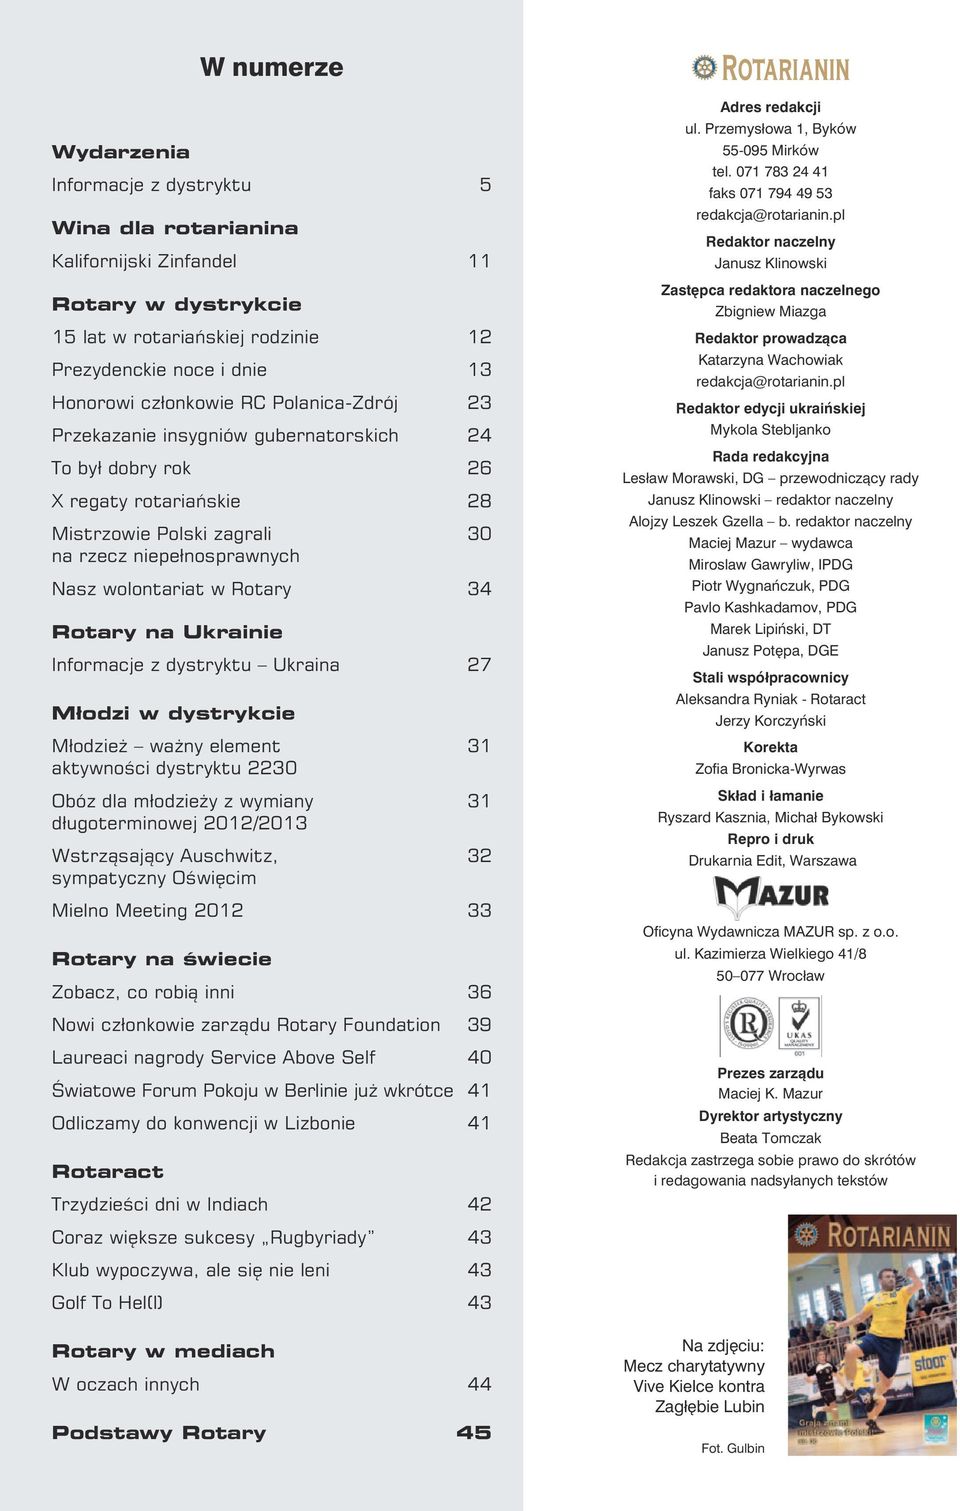 Ukrainie Informacje z dystryktu Ukraina 27 Młodzi w dystrykcie Młodzież ważny element 31 aktywności dystryktu 2230 Obóz dla młodzieży z wymiany 31 długoterminowej 2012/2013 Wstrząsający Auschwitz, 32